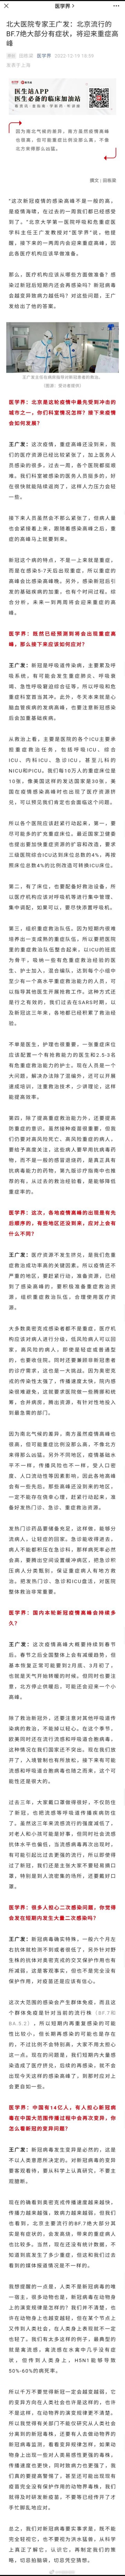 专家：北京流行的BF.7绝大部分有症状，一两周内会迎来重症高峰